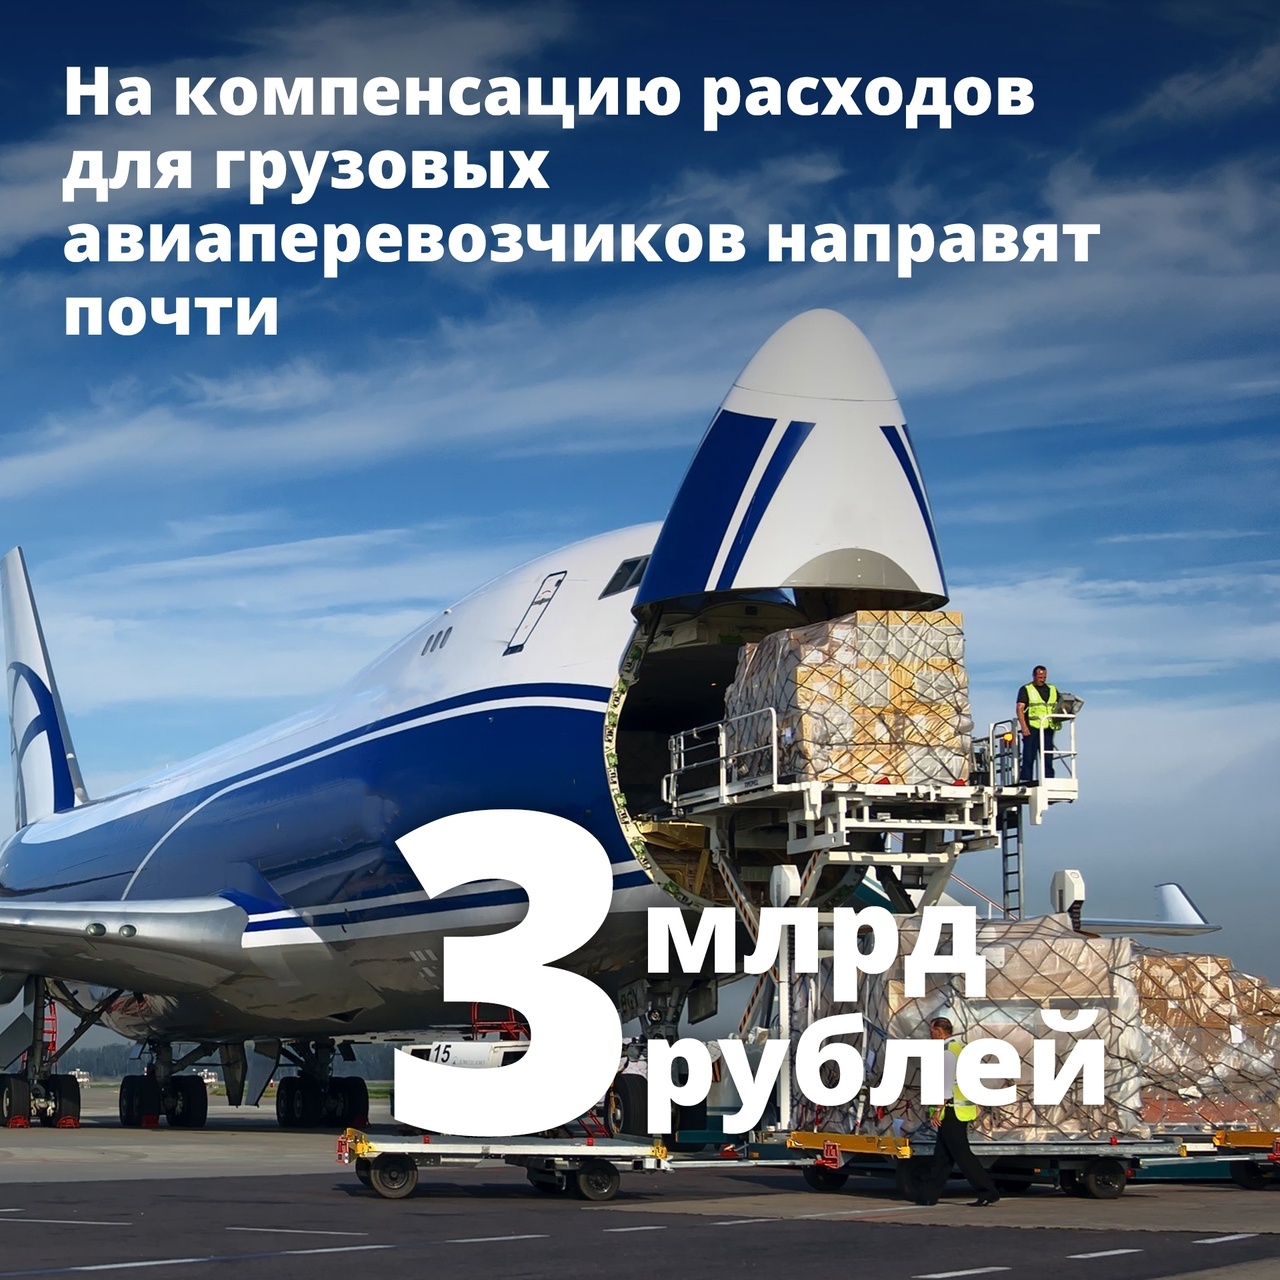 Правительство выделило почти 3 млрд рублей на поддержку авиагрузоперевозок